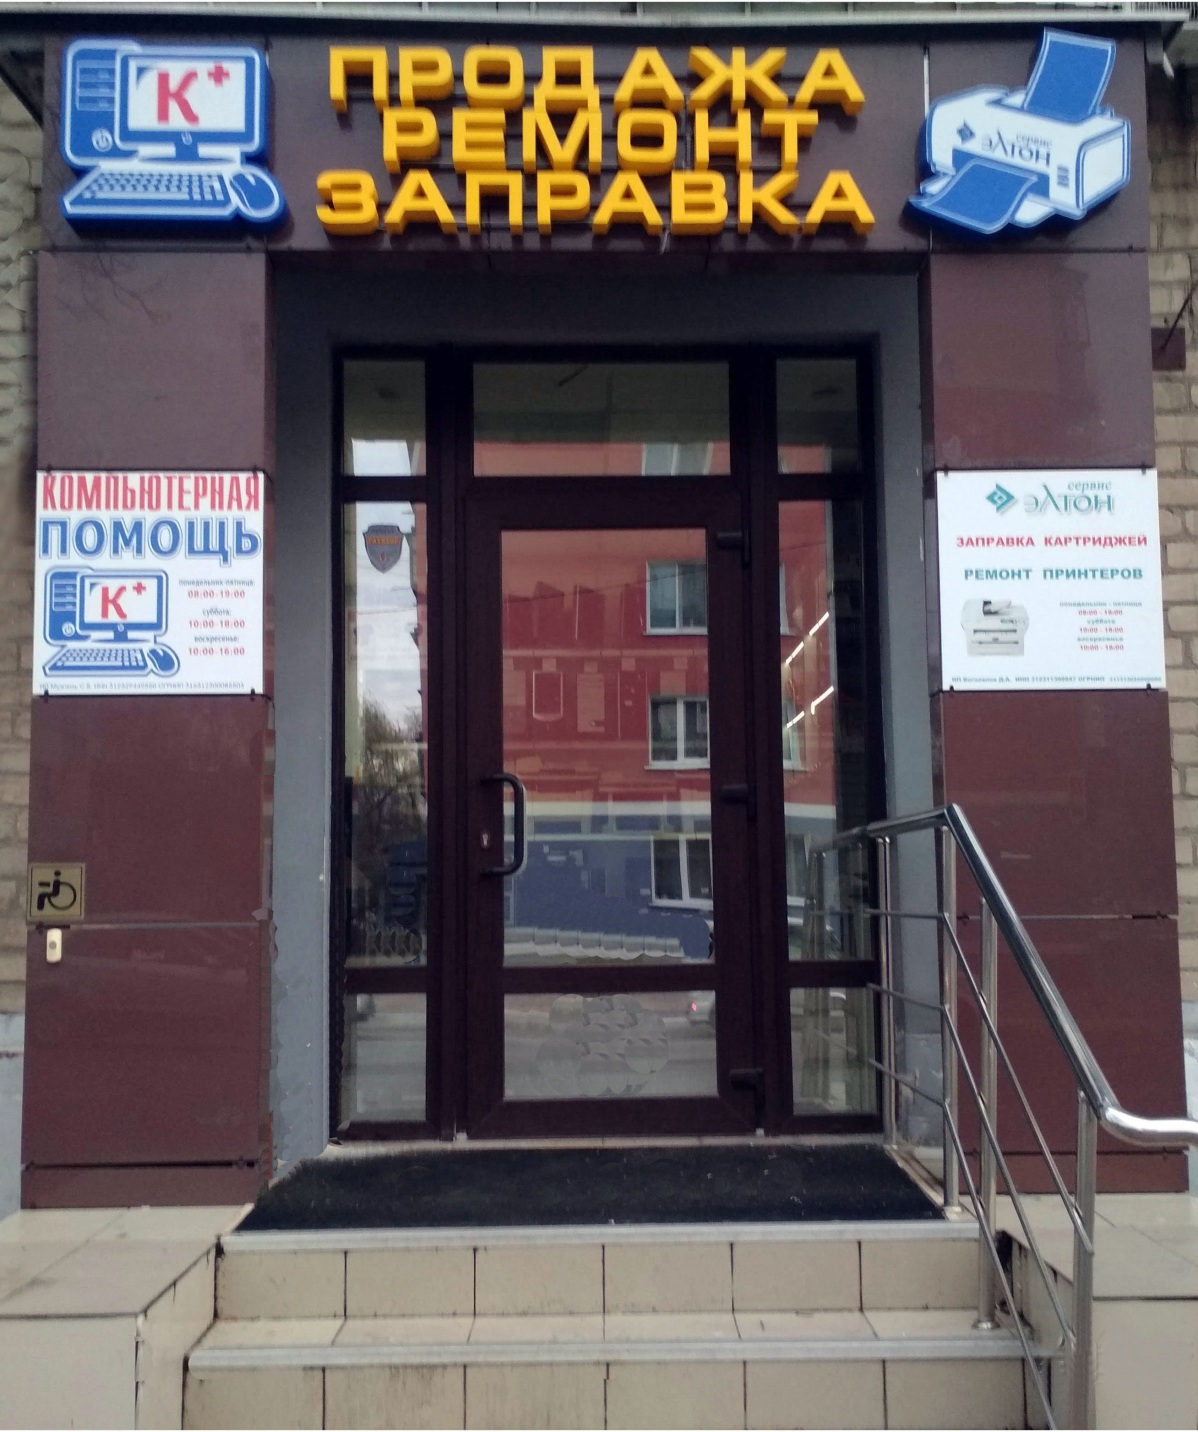 Сервисный центр по заправке картриджей и ремонту принтеров Белгород